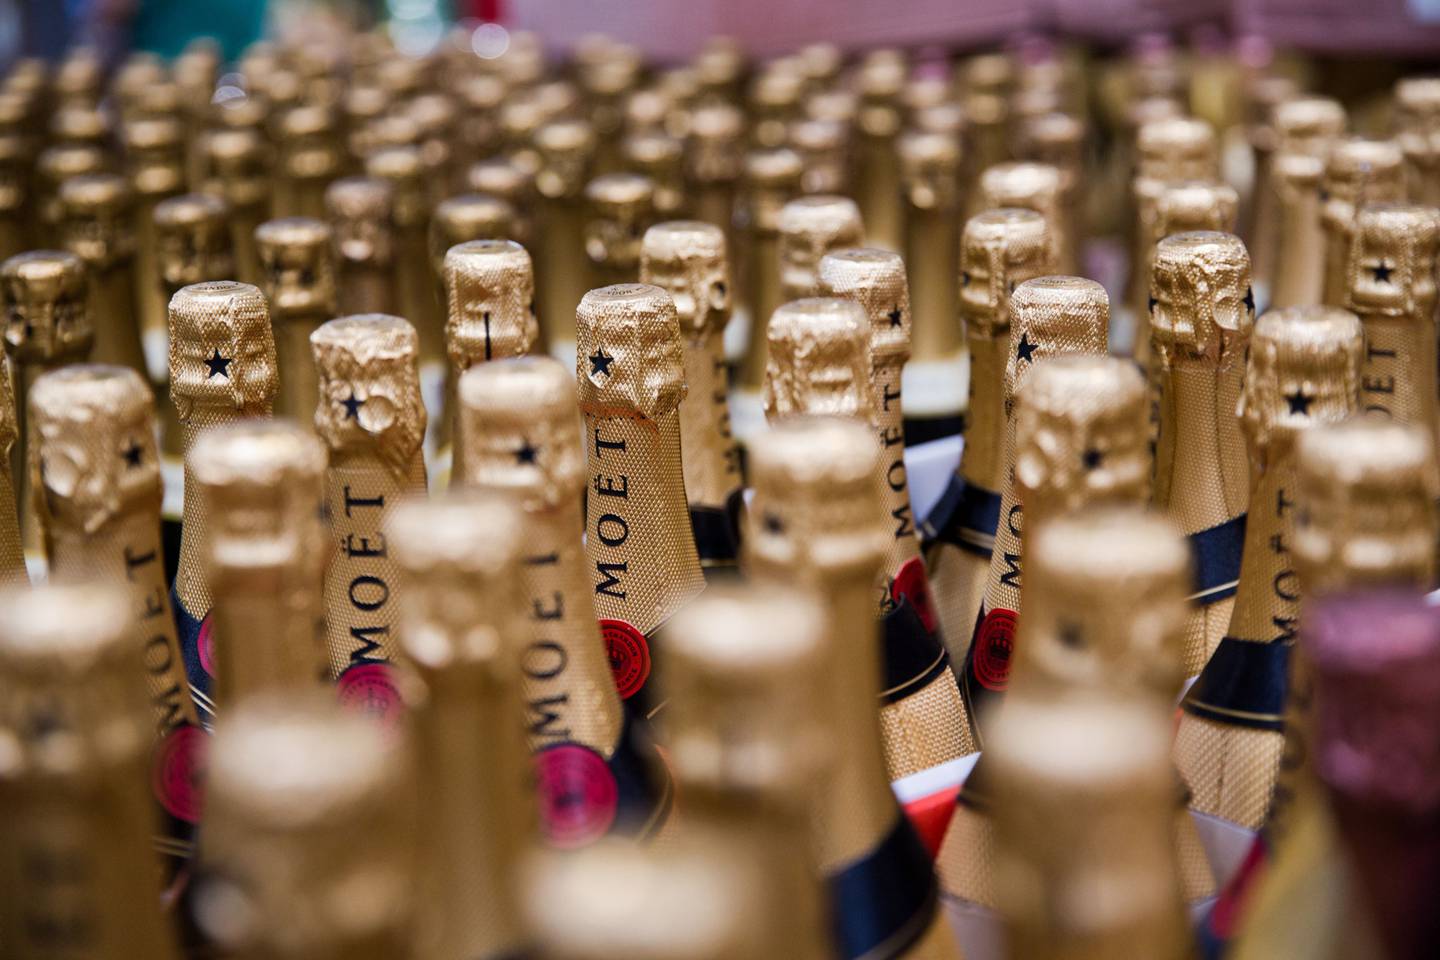 Botellas de champán Moet y Chandon se muestran a la venta dentro de una tienda de Costco Wholesale Corp. en Miami, Florida, Estados Unidos, el lunes 5 de diciembre de 2016.